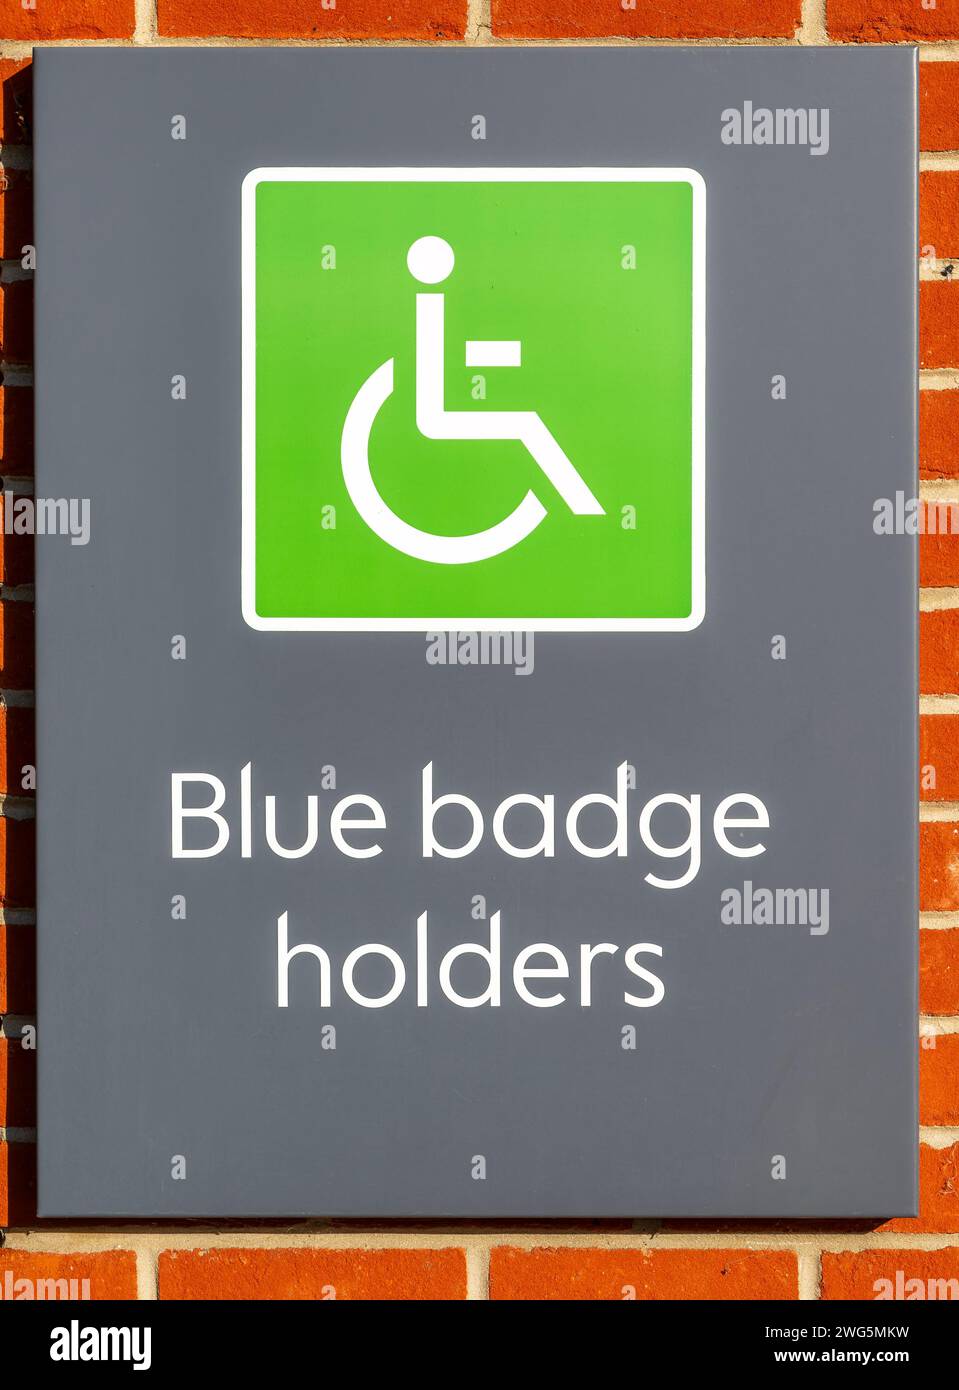 Disabled blue badge holders sign Waitrose supermarket, UK Stock Photo